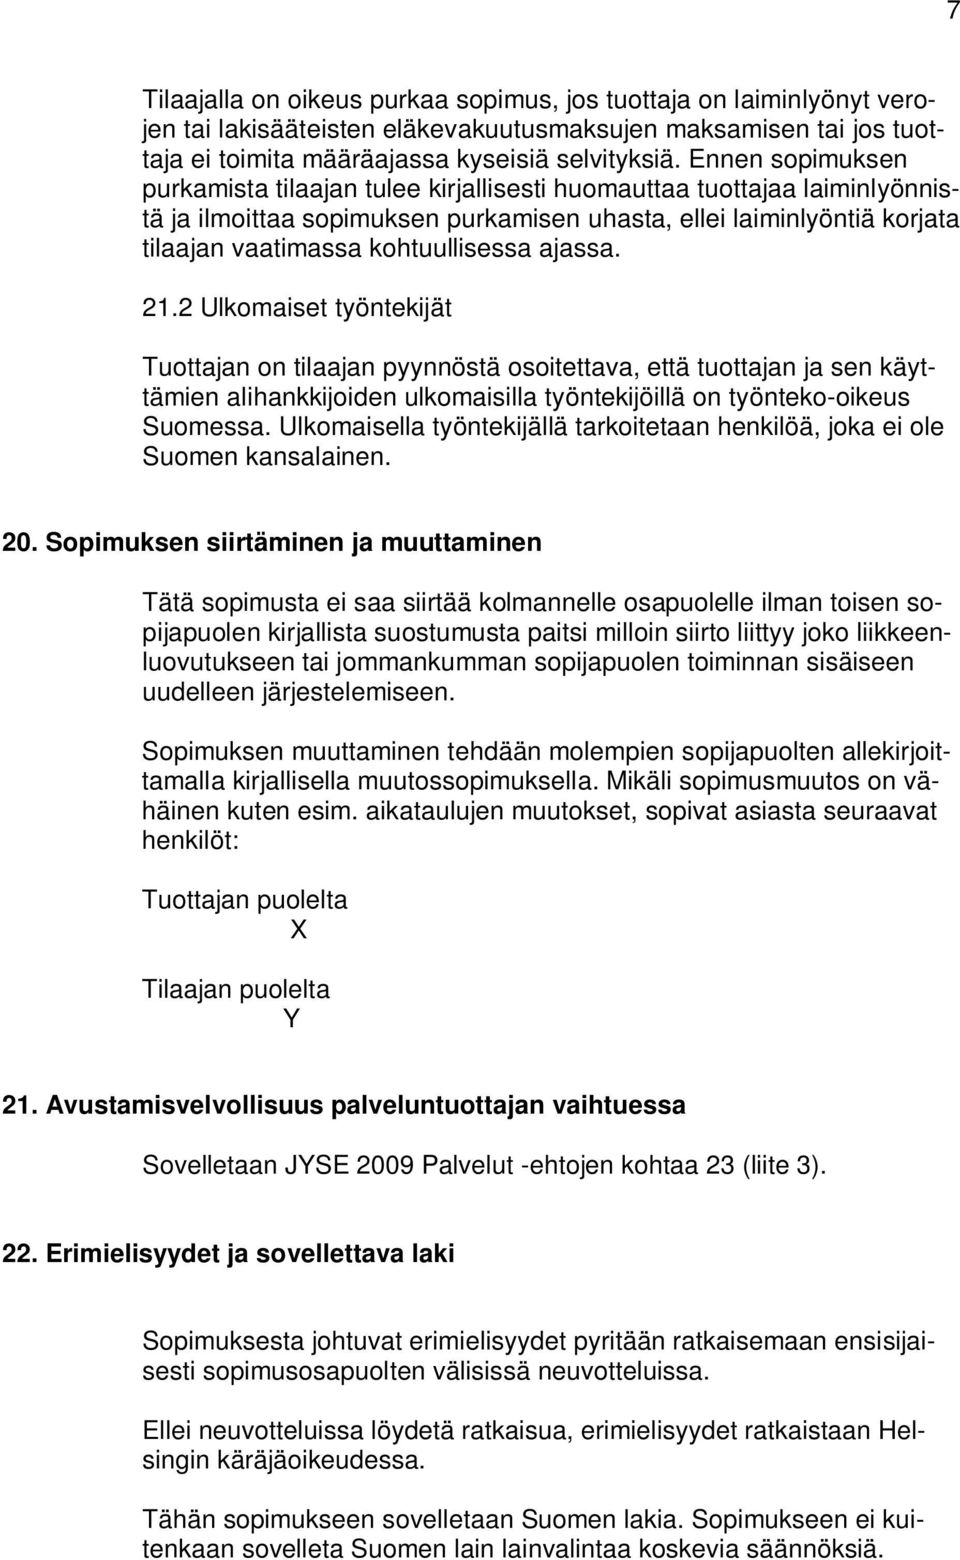 ajassa. 21.2 Ulkomaiset työntekijät Tuottajan on tilaajan pyynnöstä osoitettava, että tuottajan ja sen käyttämien alihankkijoiden ulkomaisilla työntekijöillä on työnteko-oikeus Suomessa.